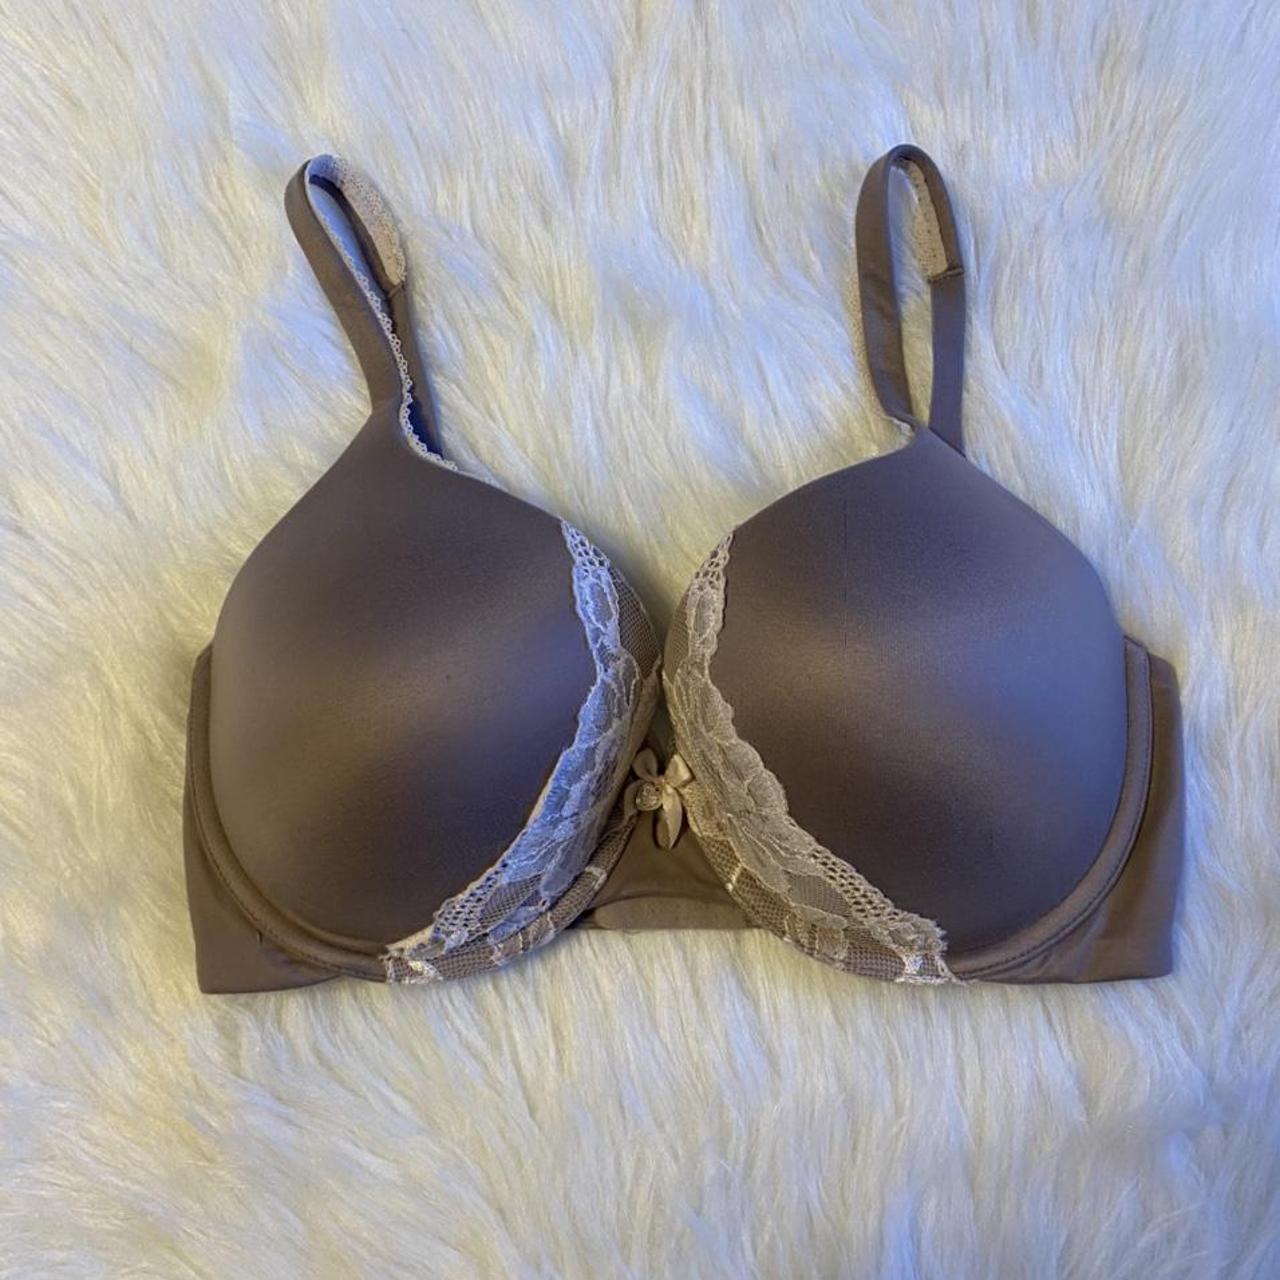 victoria's secret perfect shape bra size 32DDD